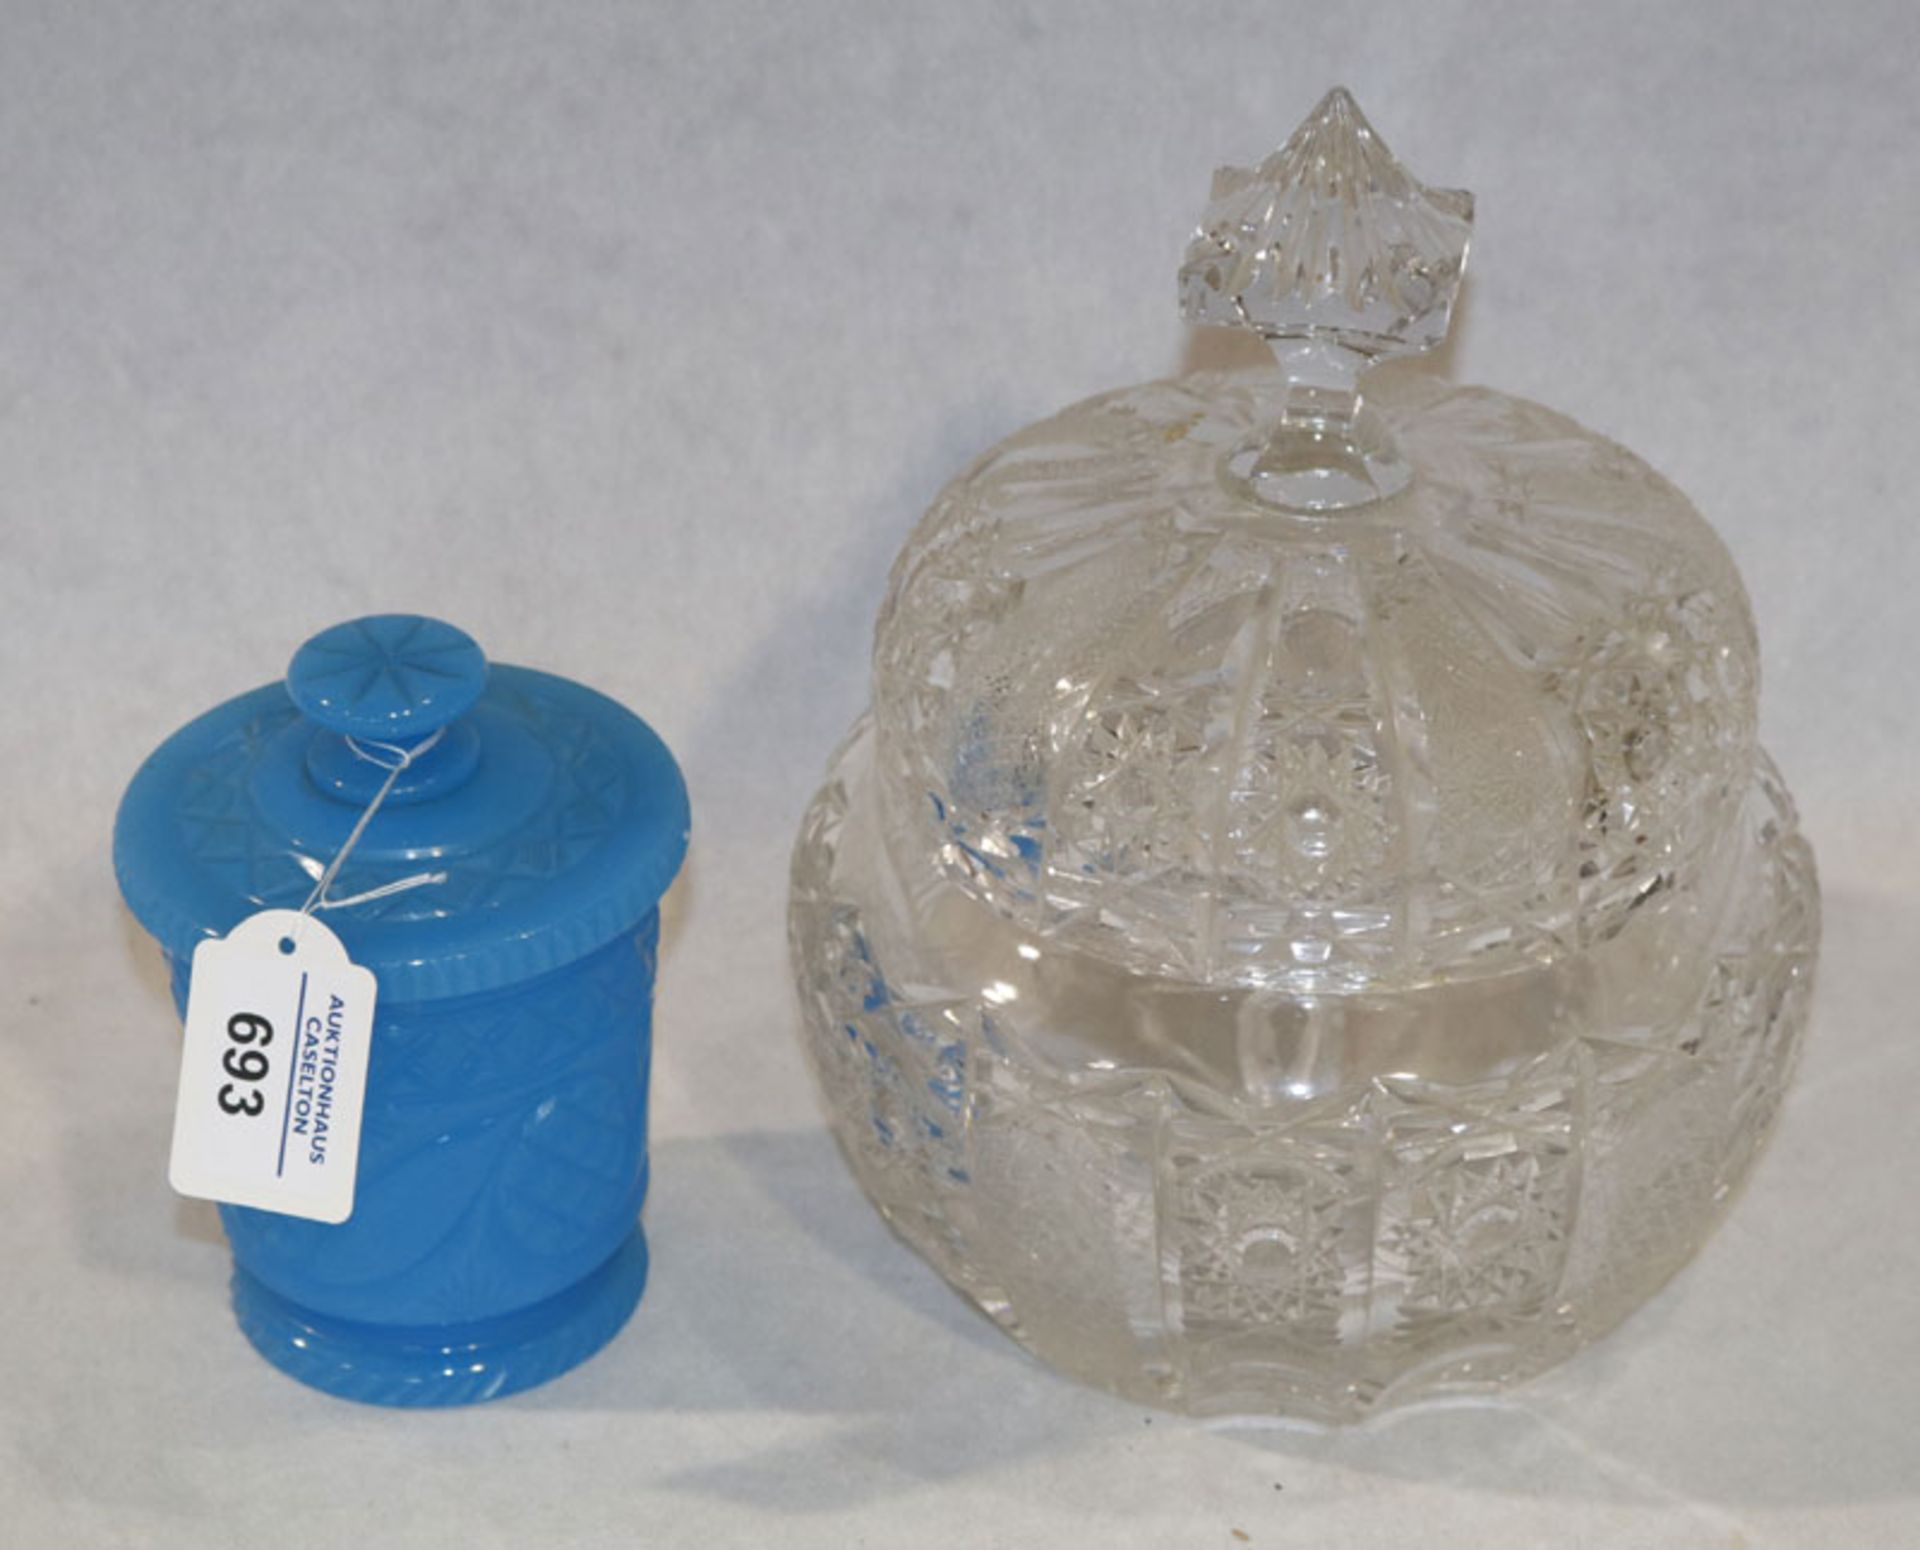 Kristallglas Deckeldose mit Schliffdekor, H 22 cm, D 19 cm, und blaue Glasdose mit Schliffdekor, H